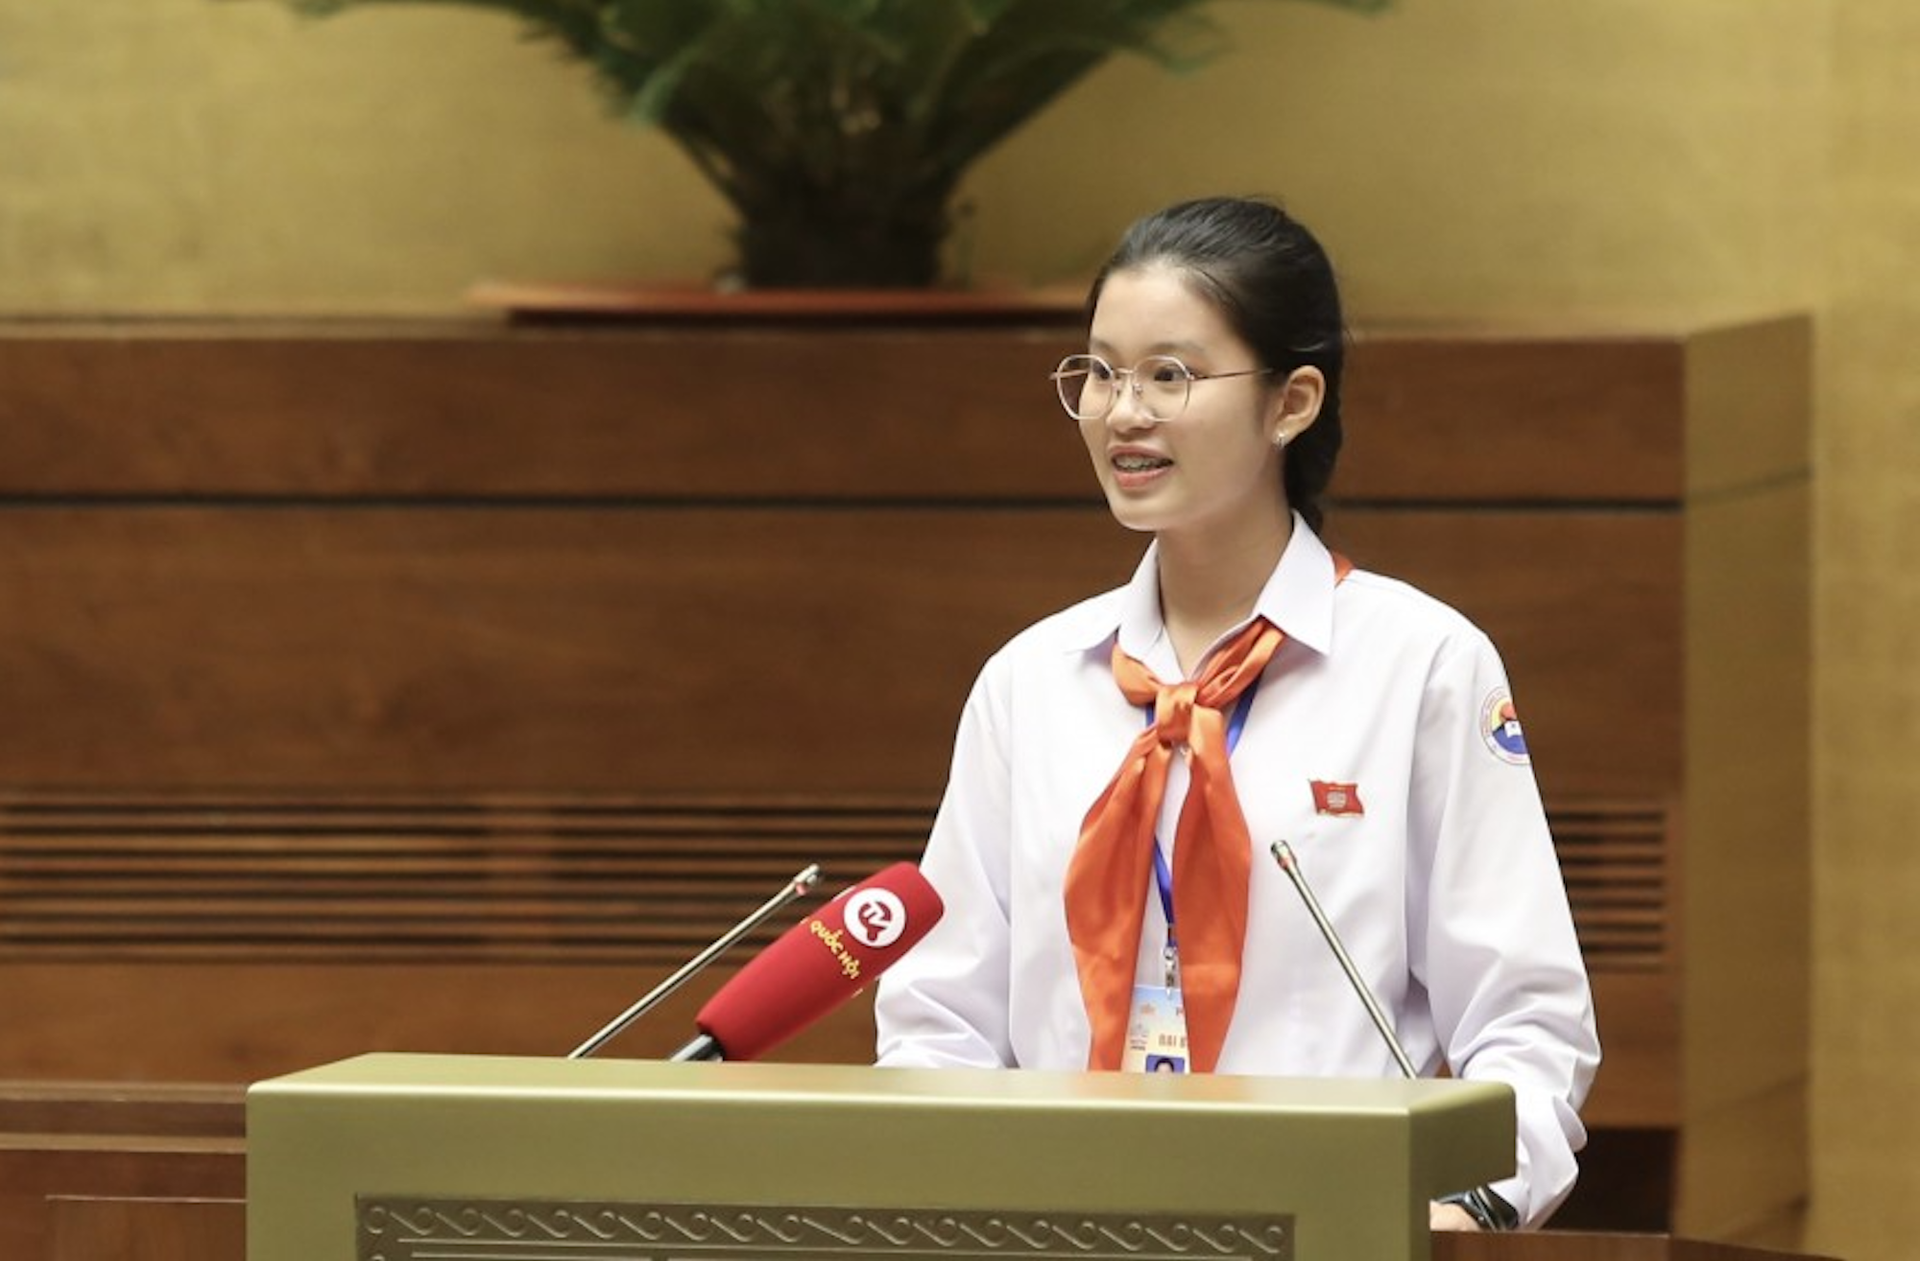 Đặng Cát Tiên, học sinh lớp 9, trường THCS Thái Nguyên (TP Nha Trang, Khánh Hòa). Năm 2023, Tiên là đại biểu tham dự phiên họp giả định 